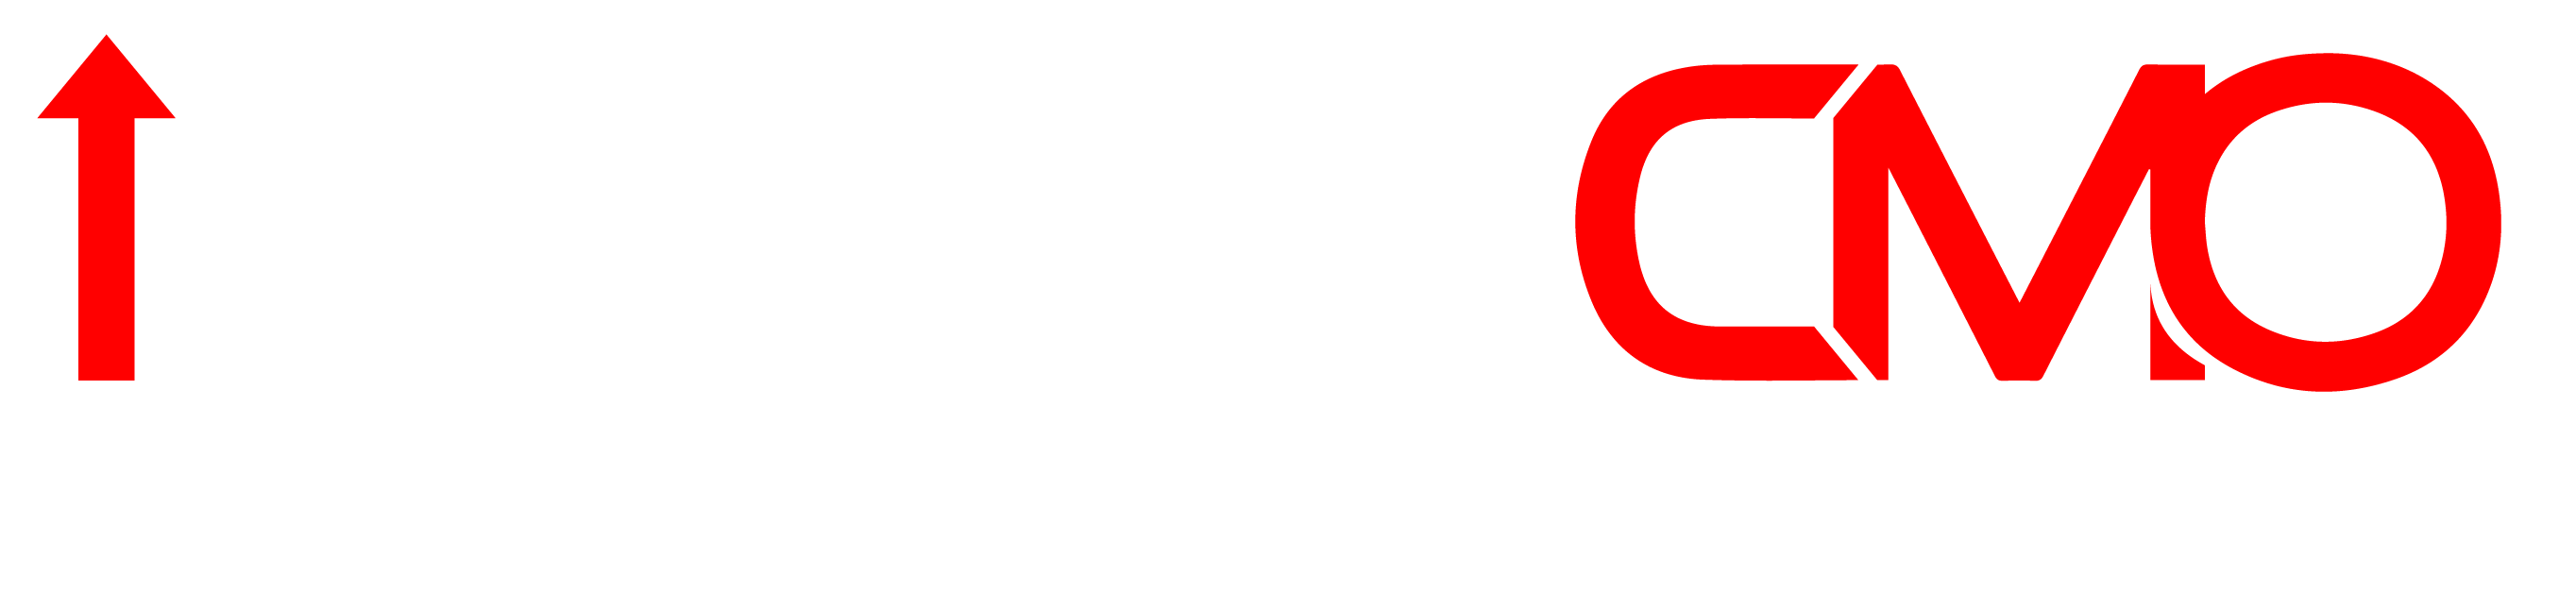 DealerCMO_Logo_White